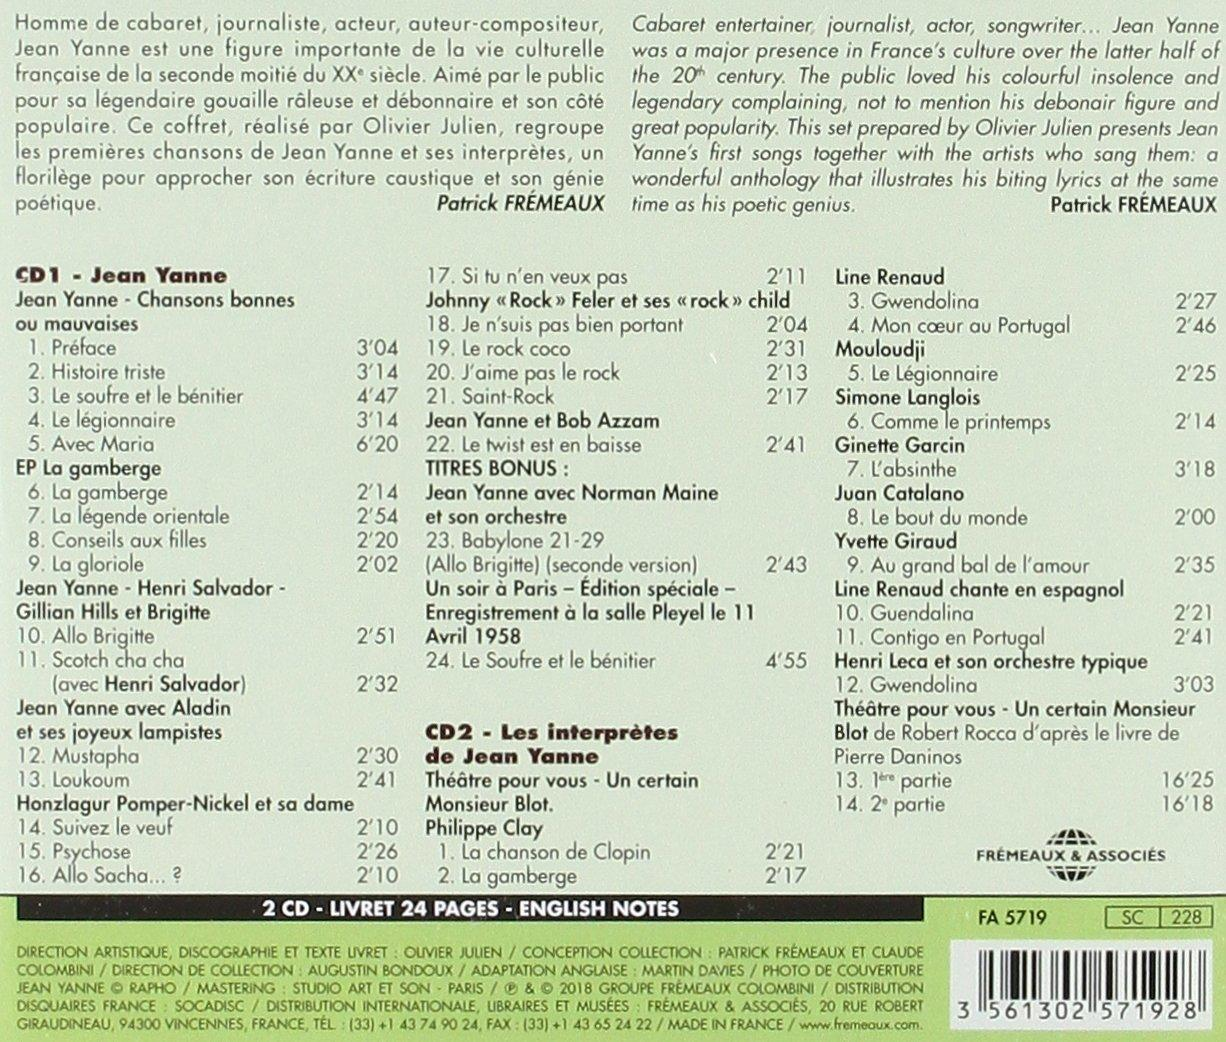 VARIOUS, Jean Yanne - Et Jean Yanne - Ses (CD) Interprètes 1956-1962